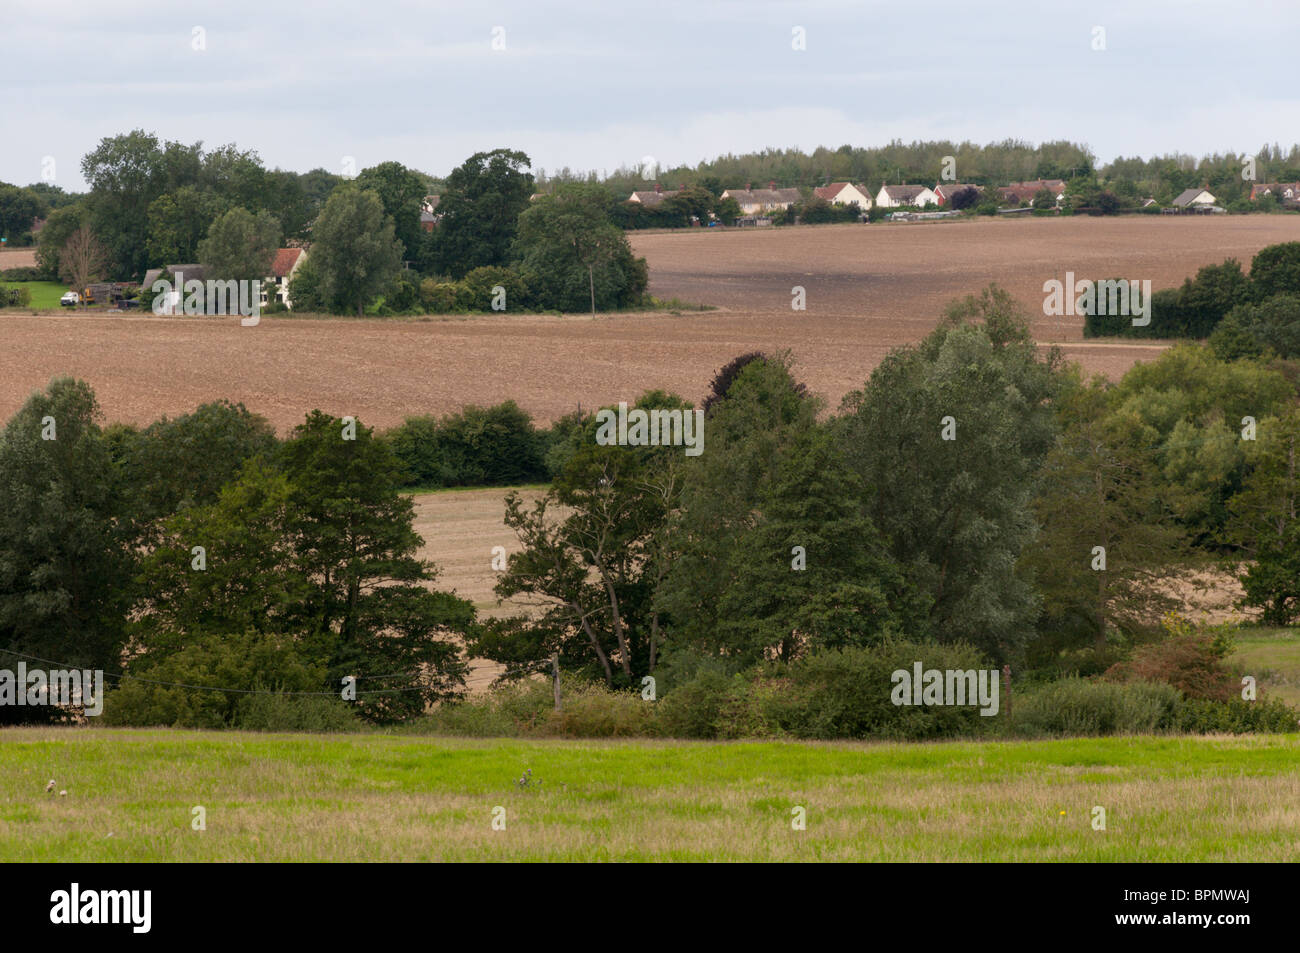 Typical Essex farmland scenery near Braintree. Stock Photo